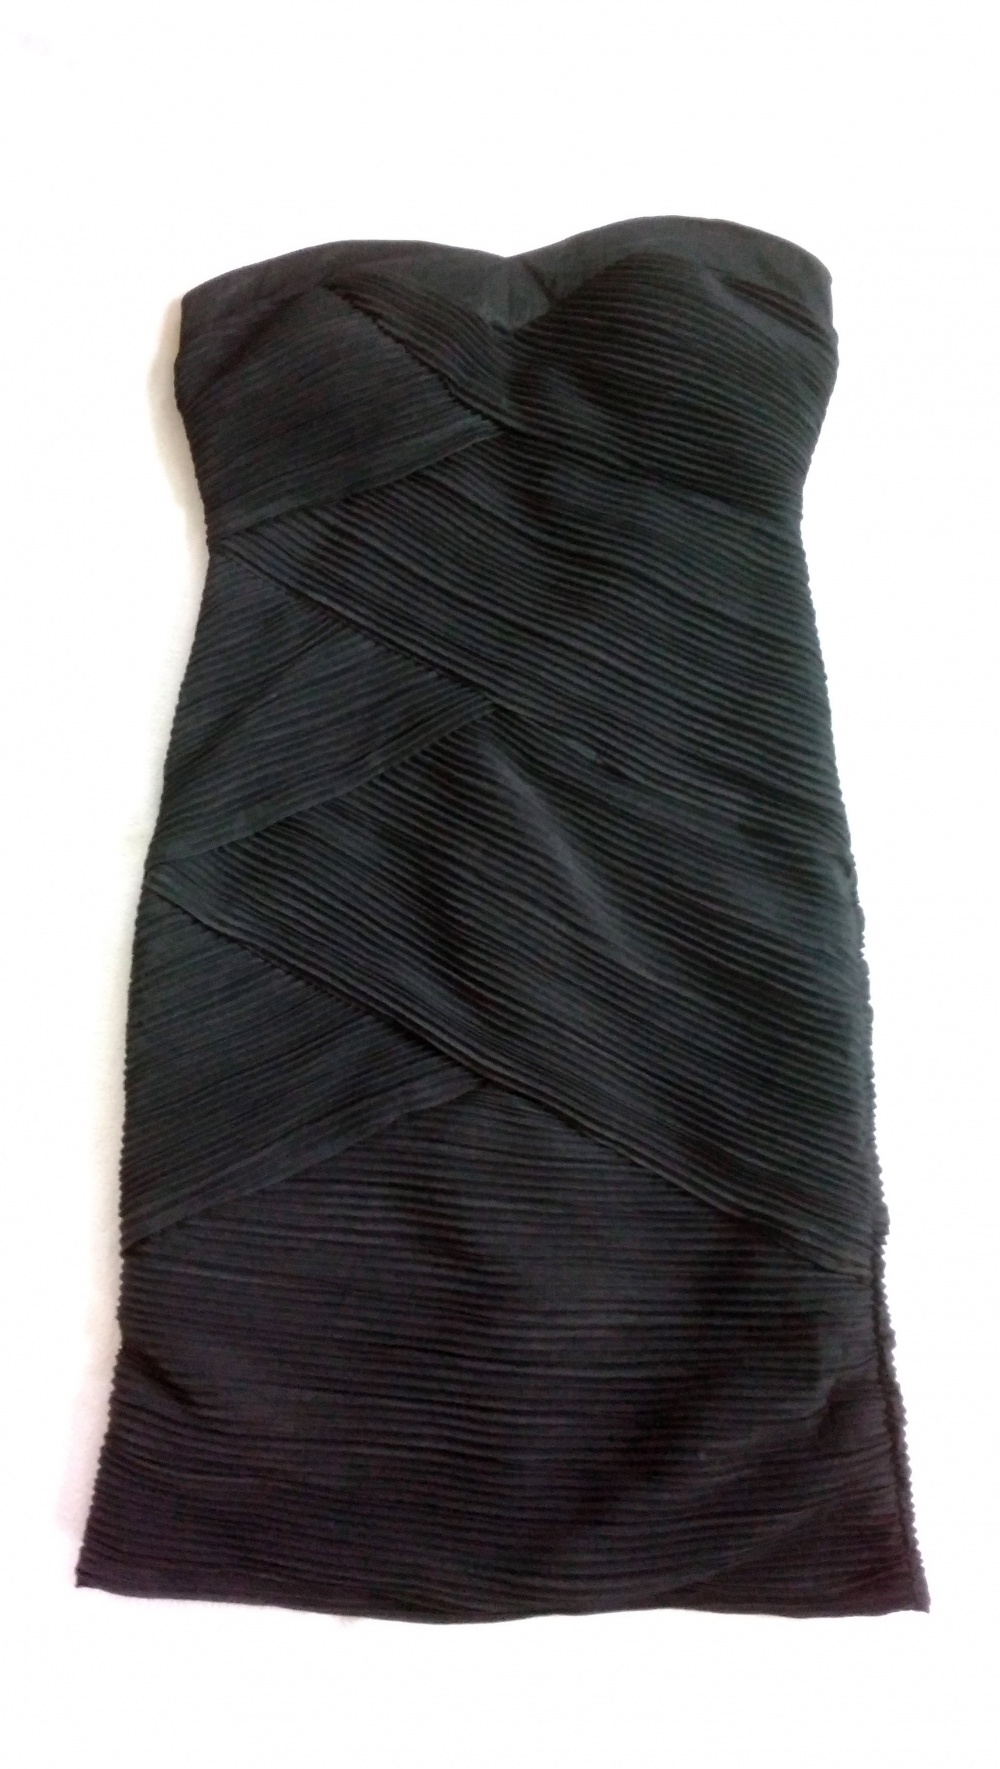 Черное коктейльное платье Piaza Italia серия Elegant Couture 42-46RUS